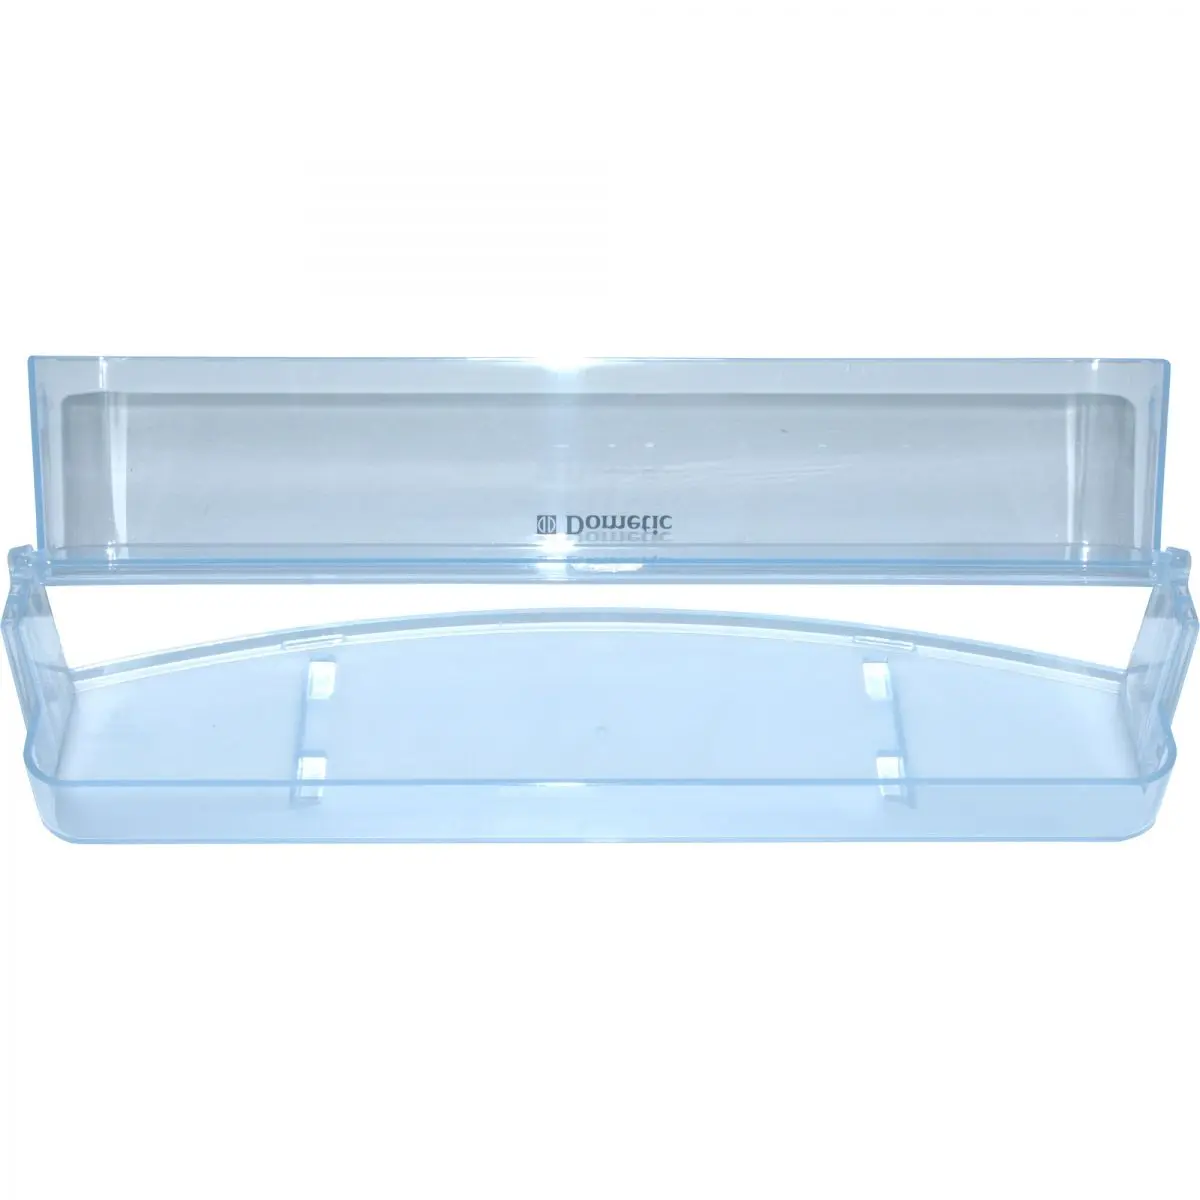 Polička transparentná modrá, š 37,5 x h 10,2 x v 6,7 cm pre chladničku Dometic RM 84XX, - RMS 84XX